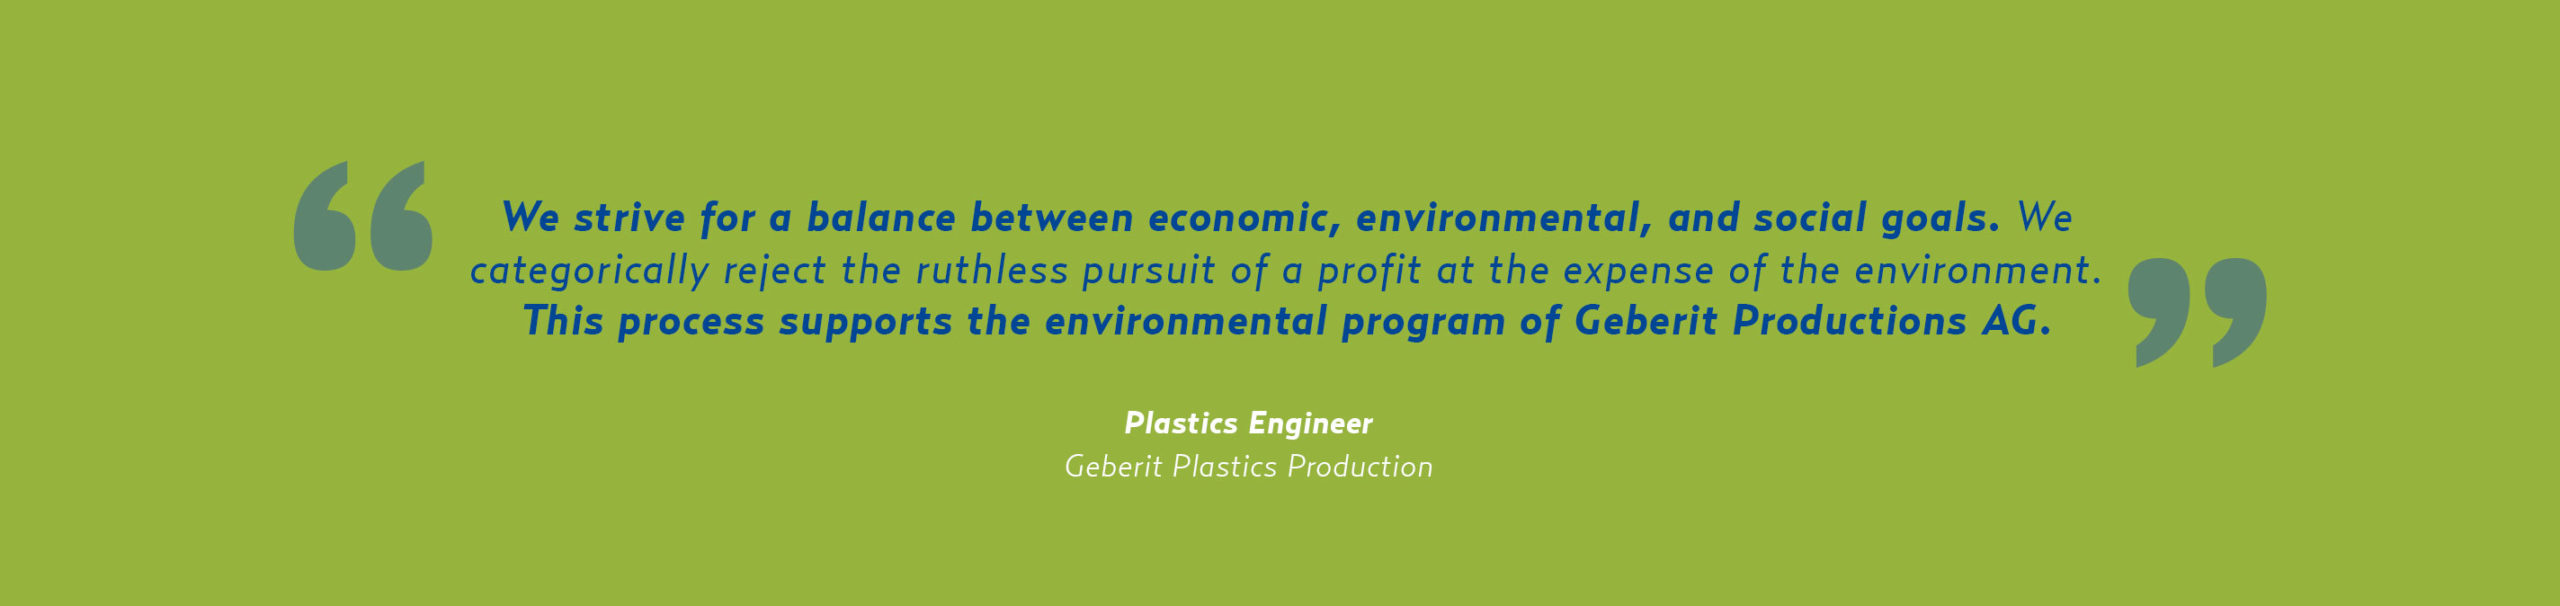 ESG-quote-Geberit Plastics Production